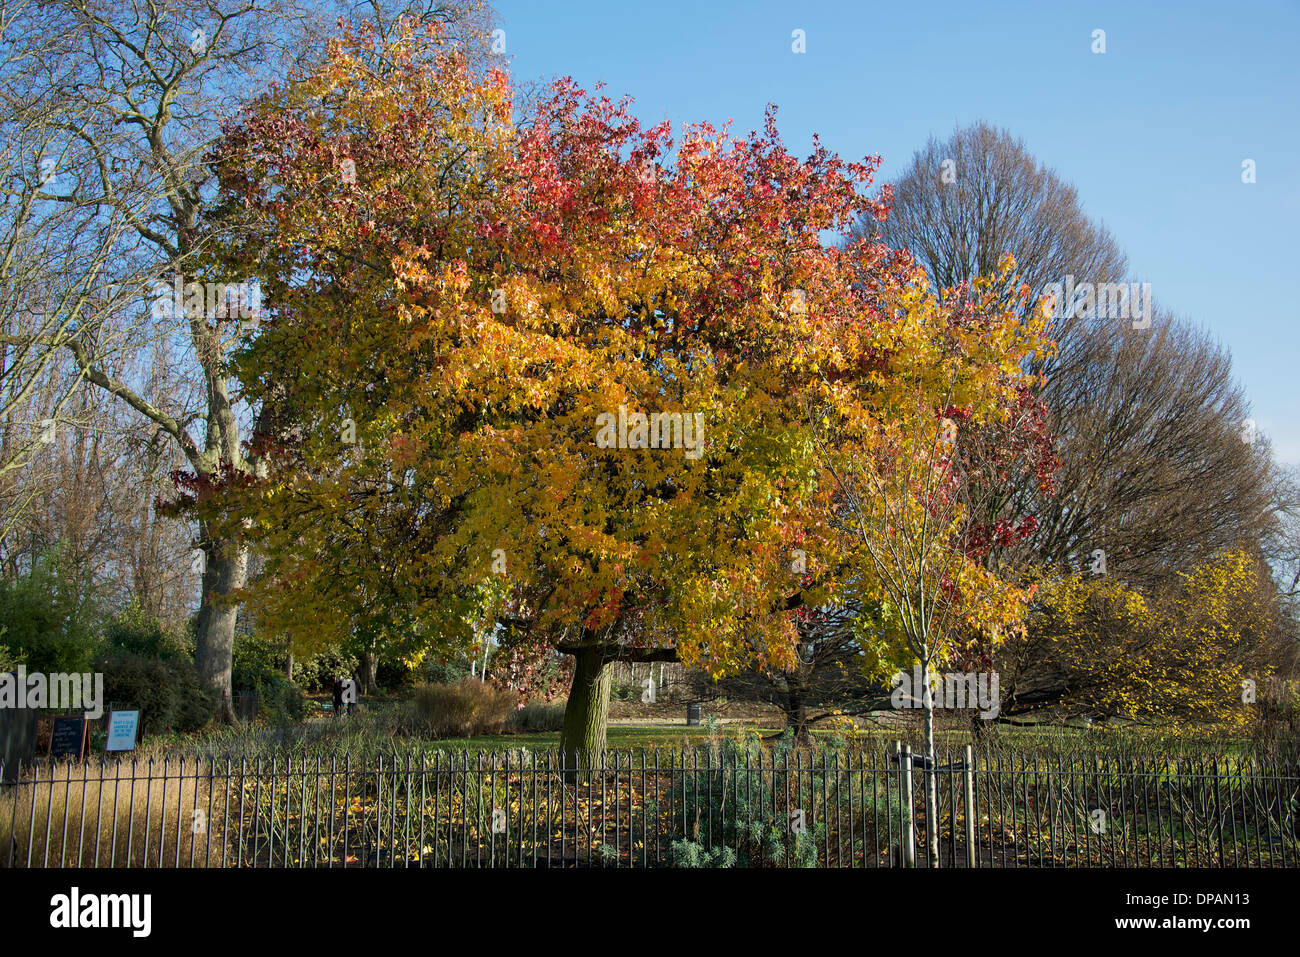 Arbre en couleurs d'automne Regents Park Londres Angleterre Royaume-uni Banque D'Images